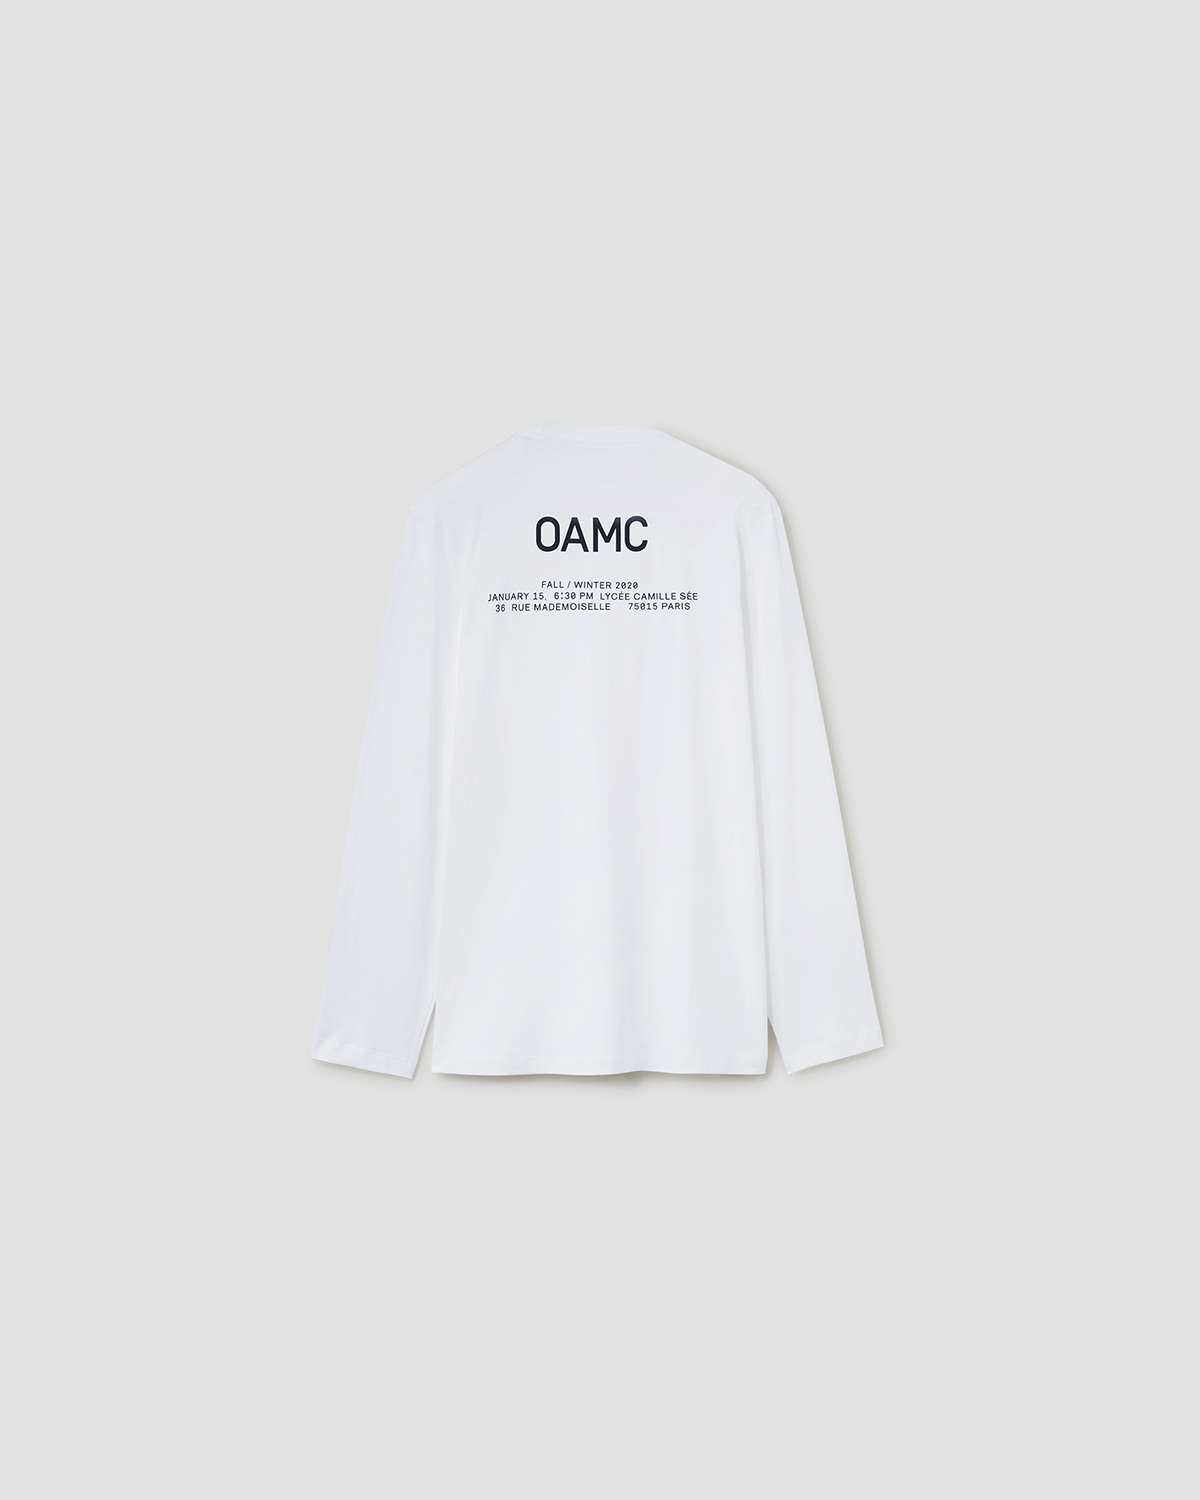 お気にいる】 スタッフ staff OAMC Tシャツ sizeM grey Tシャツ